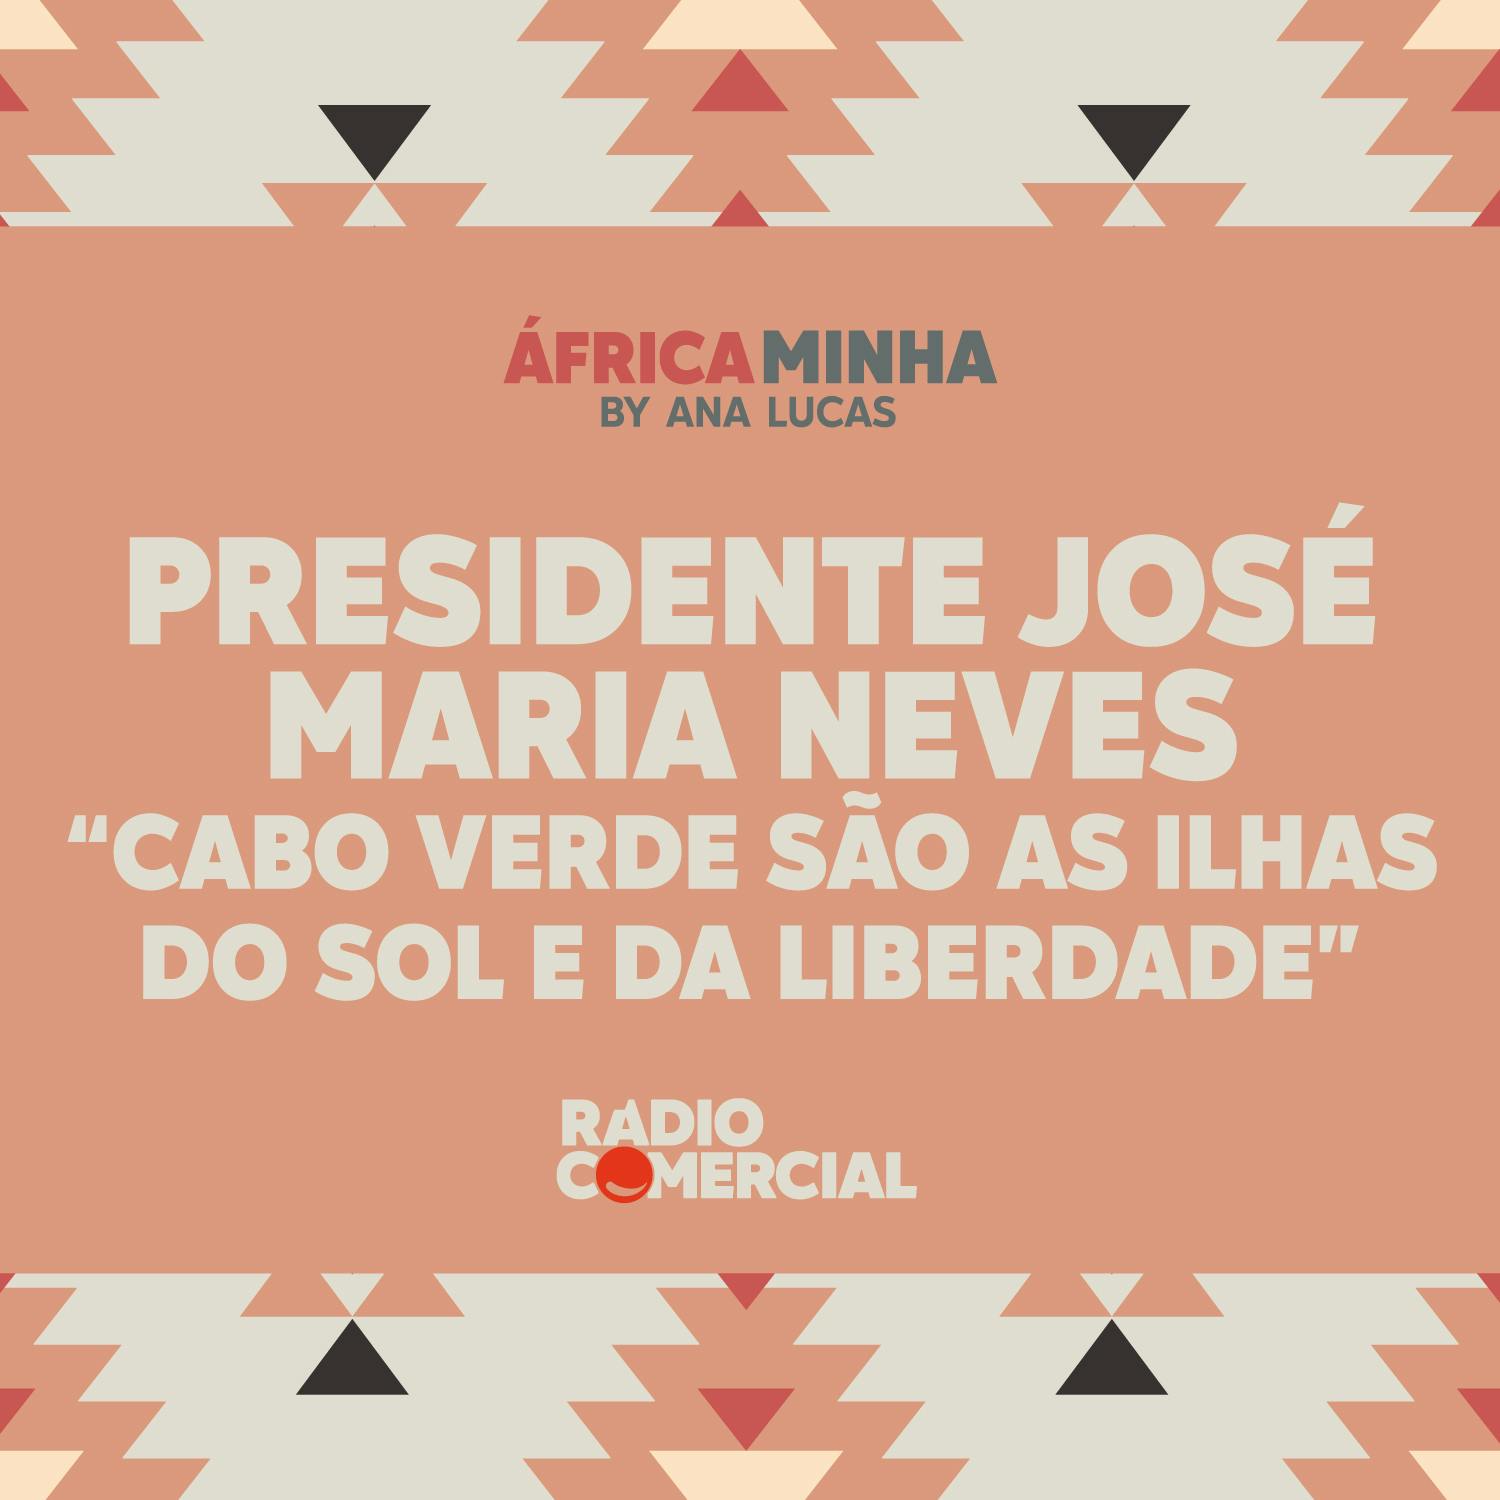 Presidente José Maria Neves "Cabo Verde são as ilhas do Sol e da Liberdade"